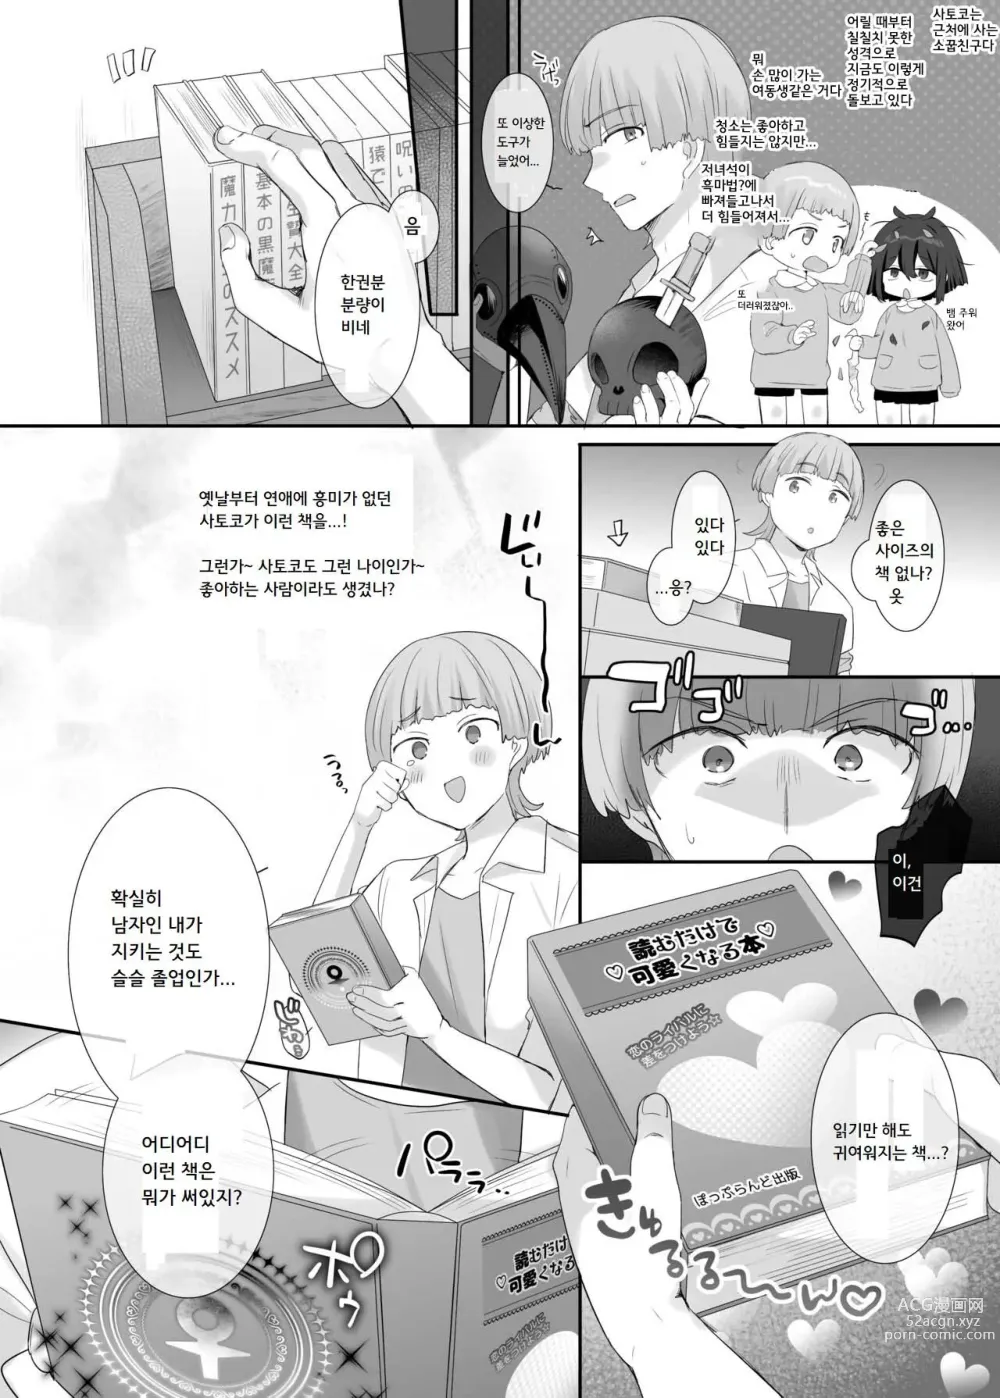 Page 2 of doujinshi 내 몸으로 싸우지마!